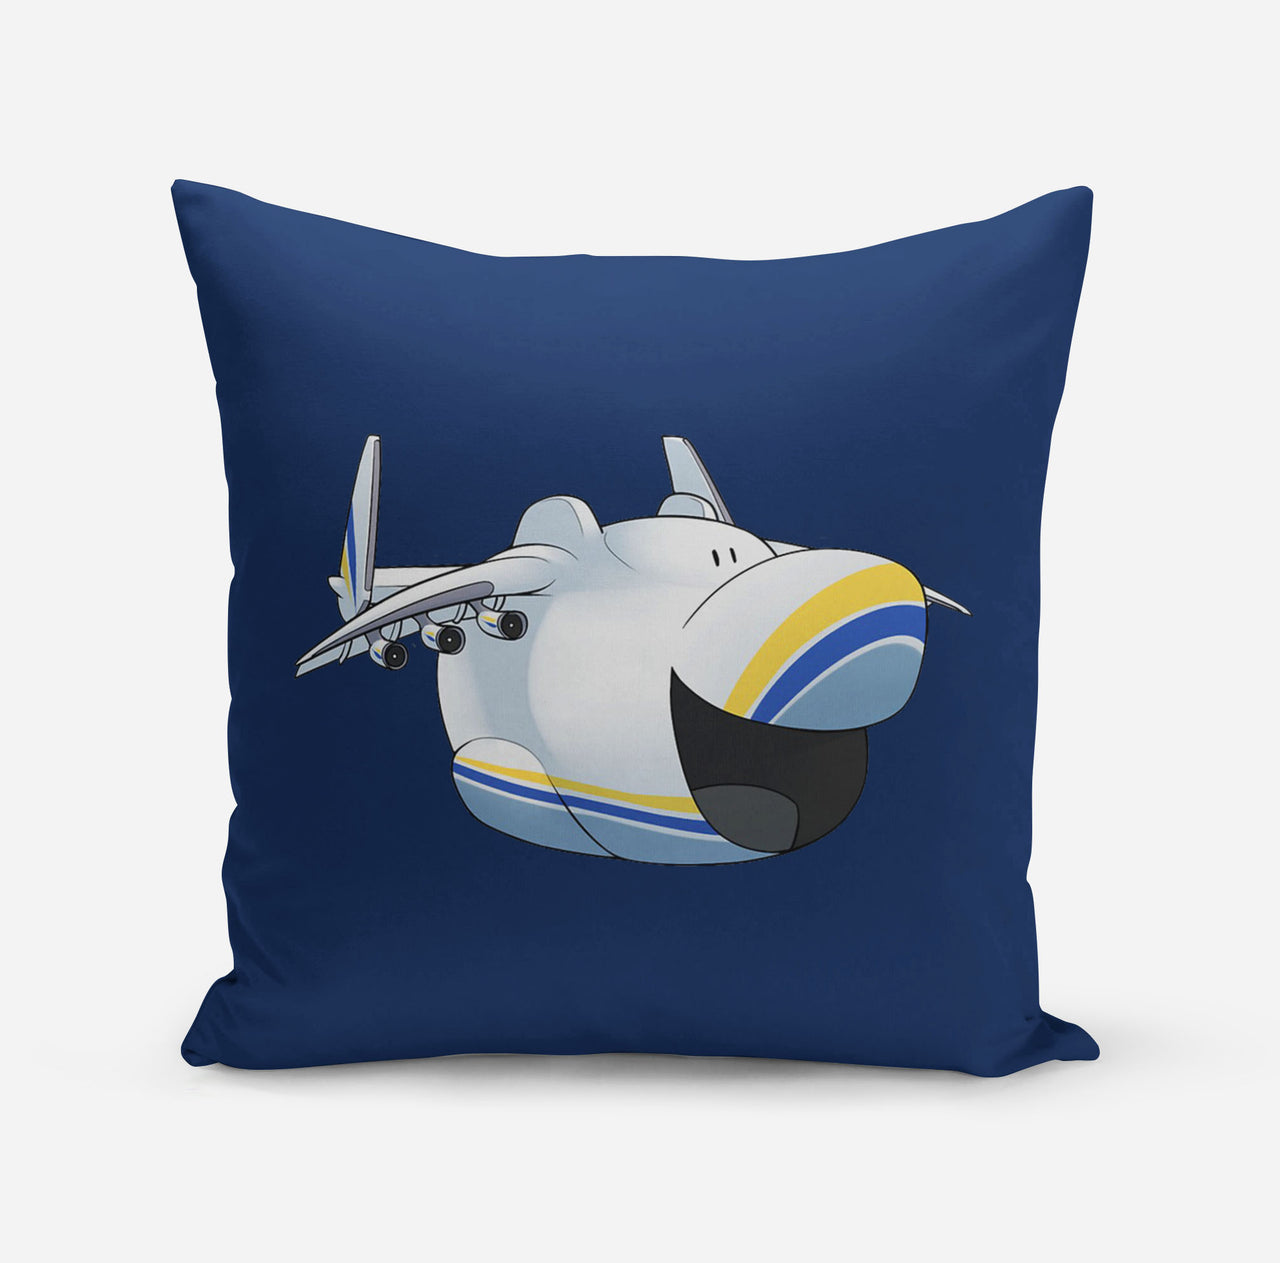 Antonov 225 Mouth Designed Pillows